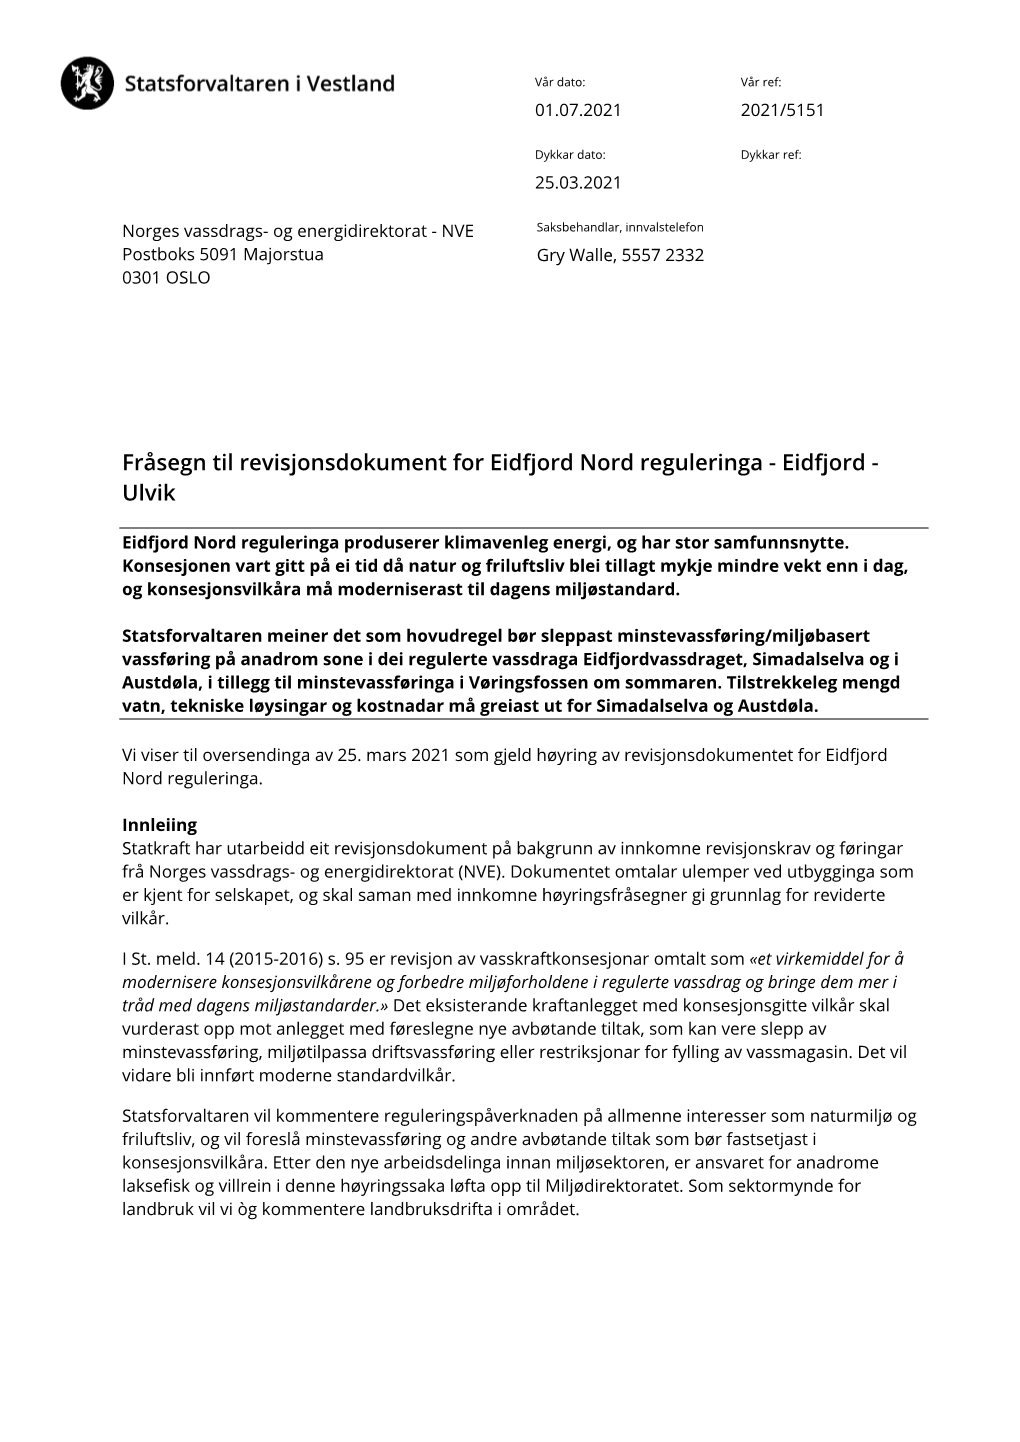 Fråsegn Til Revisjonsdokument for Eidfjord Nord Reguleringa - Eidfjord - Ulvik